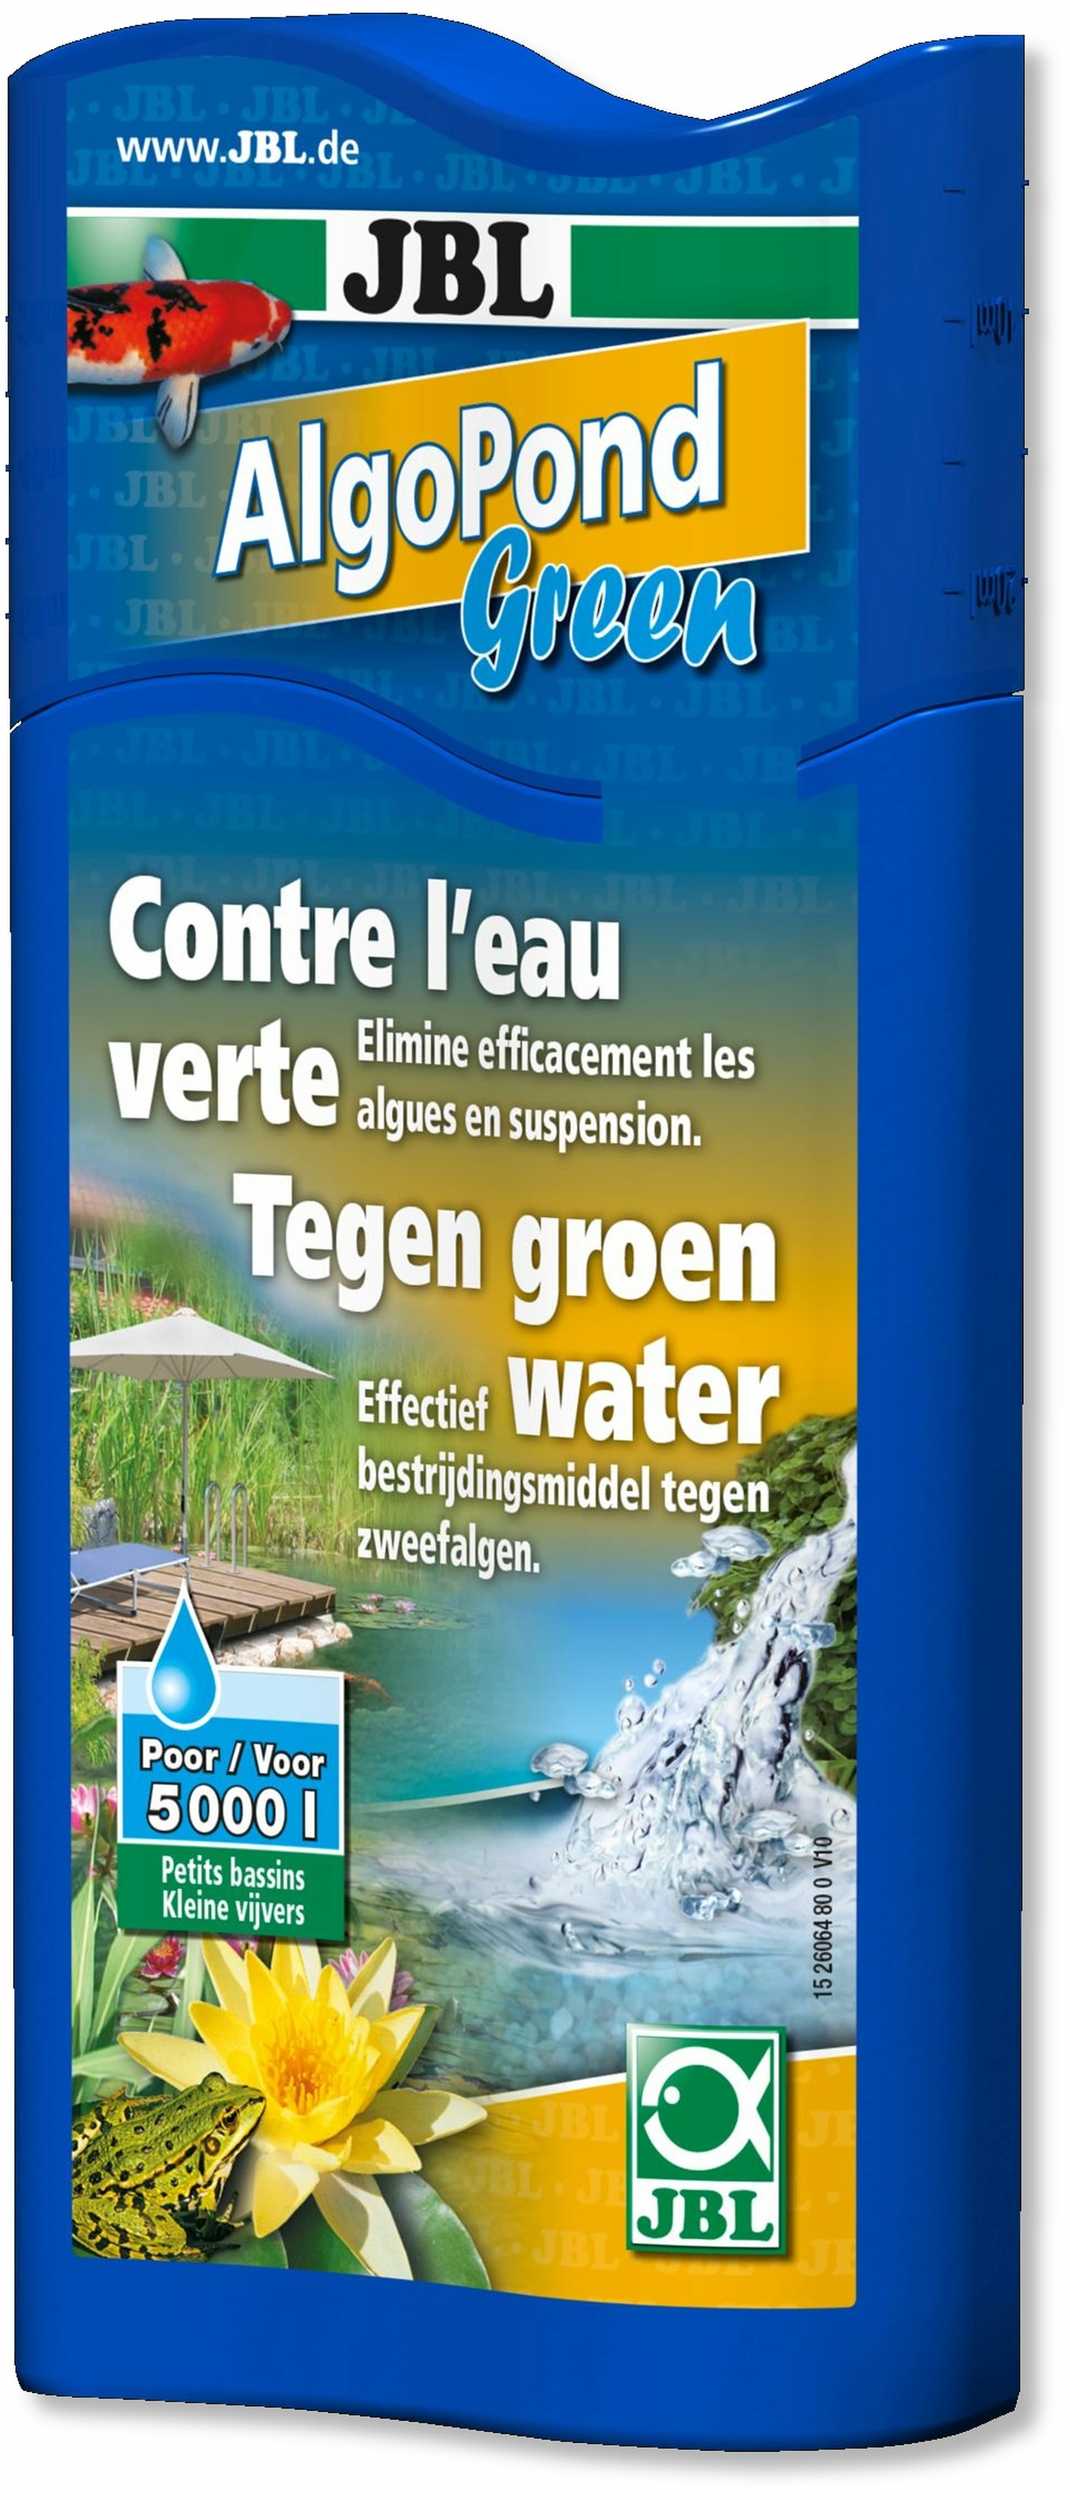 JBL AlgoPond Green 250 ml produit anti-algues contre l\'eau verte en bassin. Traite jusqu\'à 5000 L